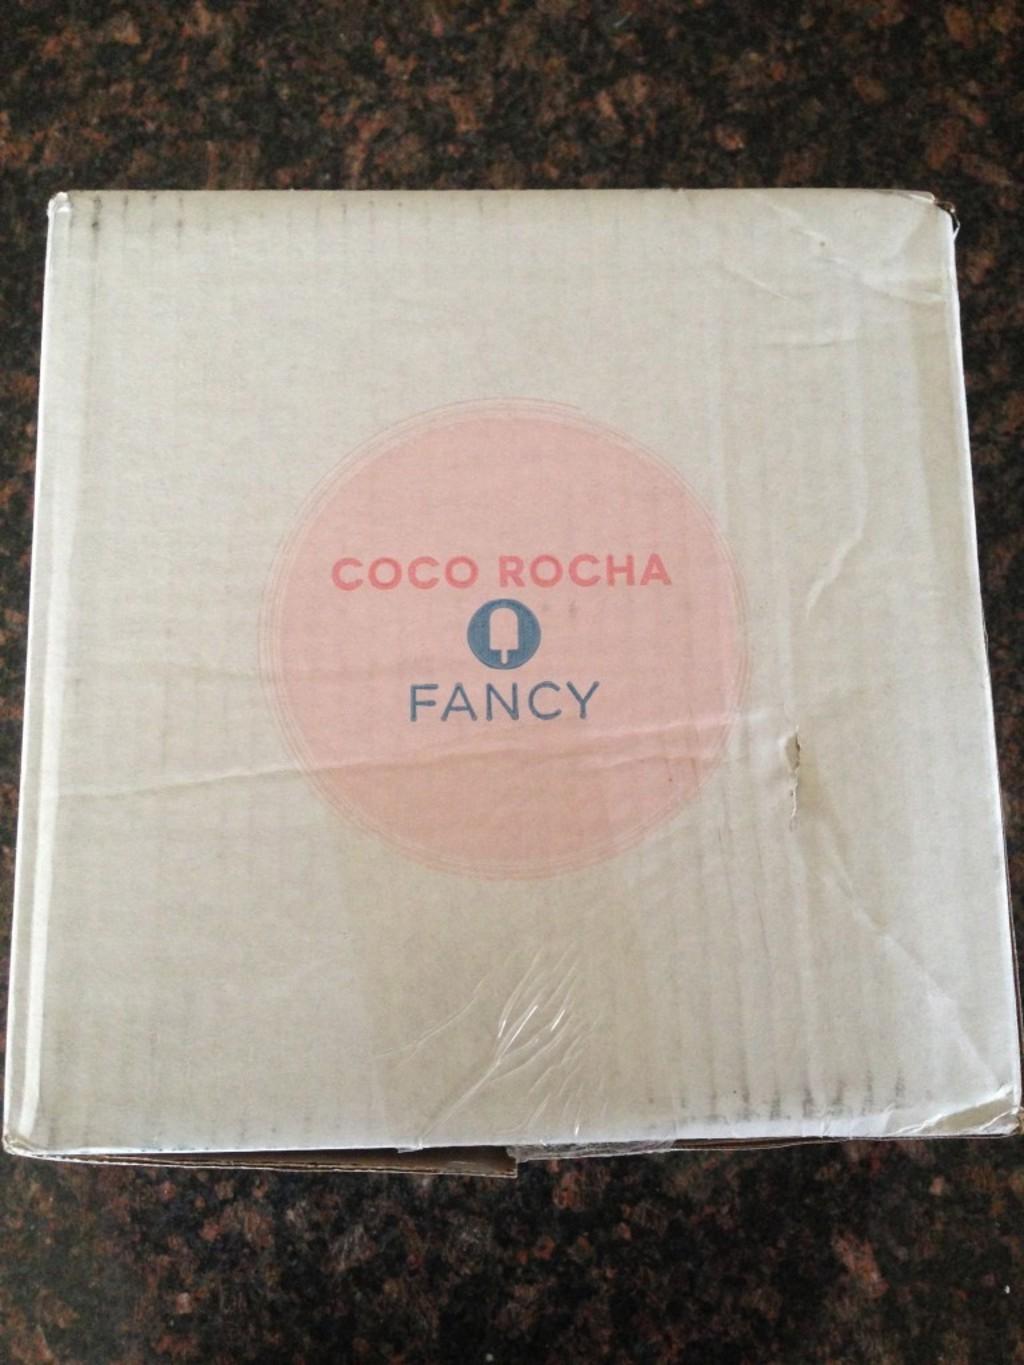 July 2013 Coco Rocha Fancy Box